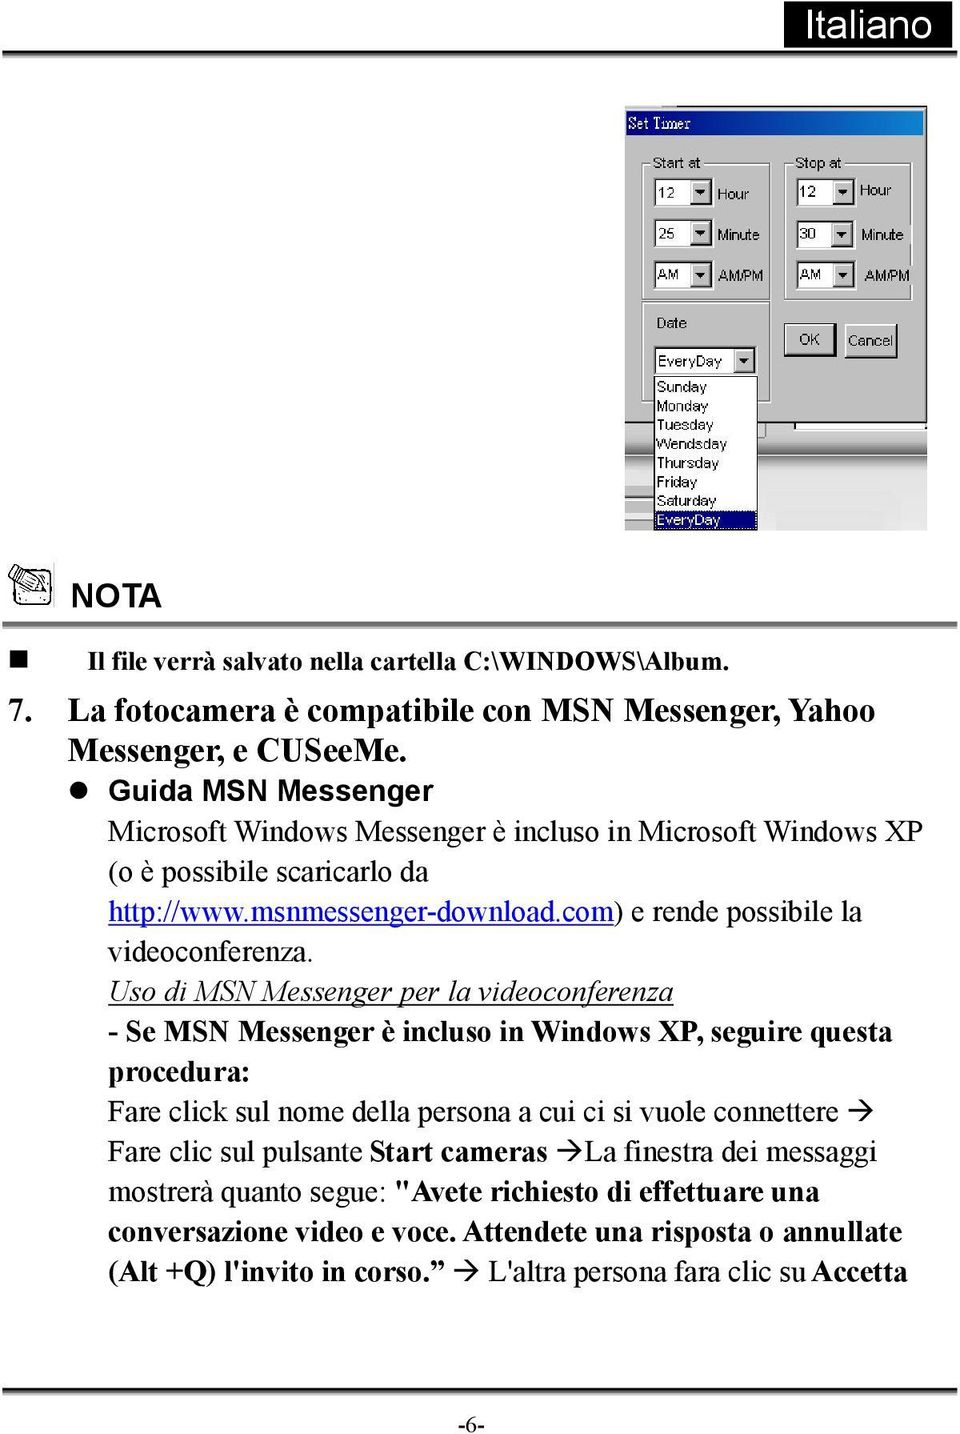 Uso di MSN Messenger per la videoconferenza - Se MSN Messenger è incluso in Windows XP, seguire questa procedura: Fare click sul nome della persona a cui ci si vuole connettere Fare clic